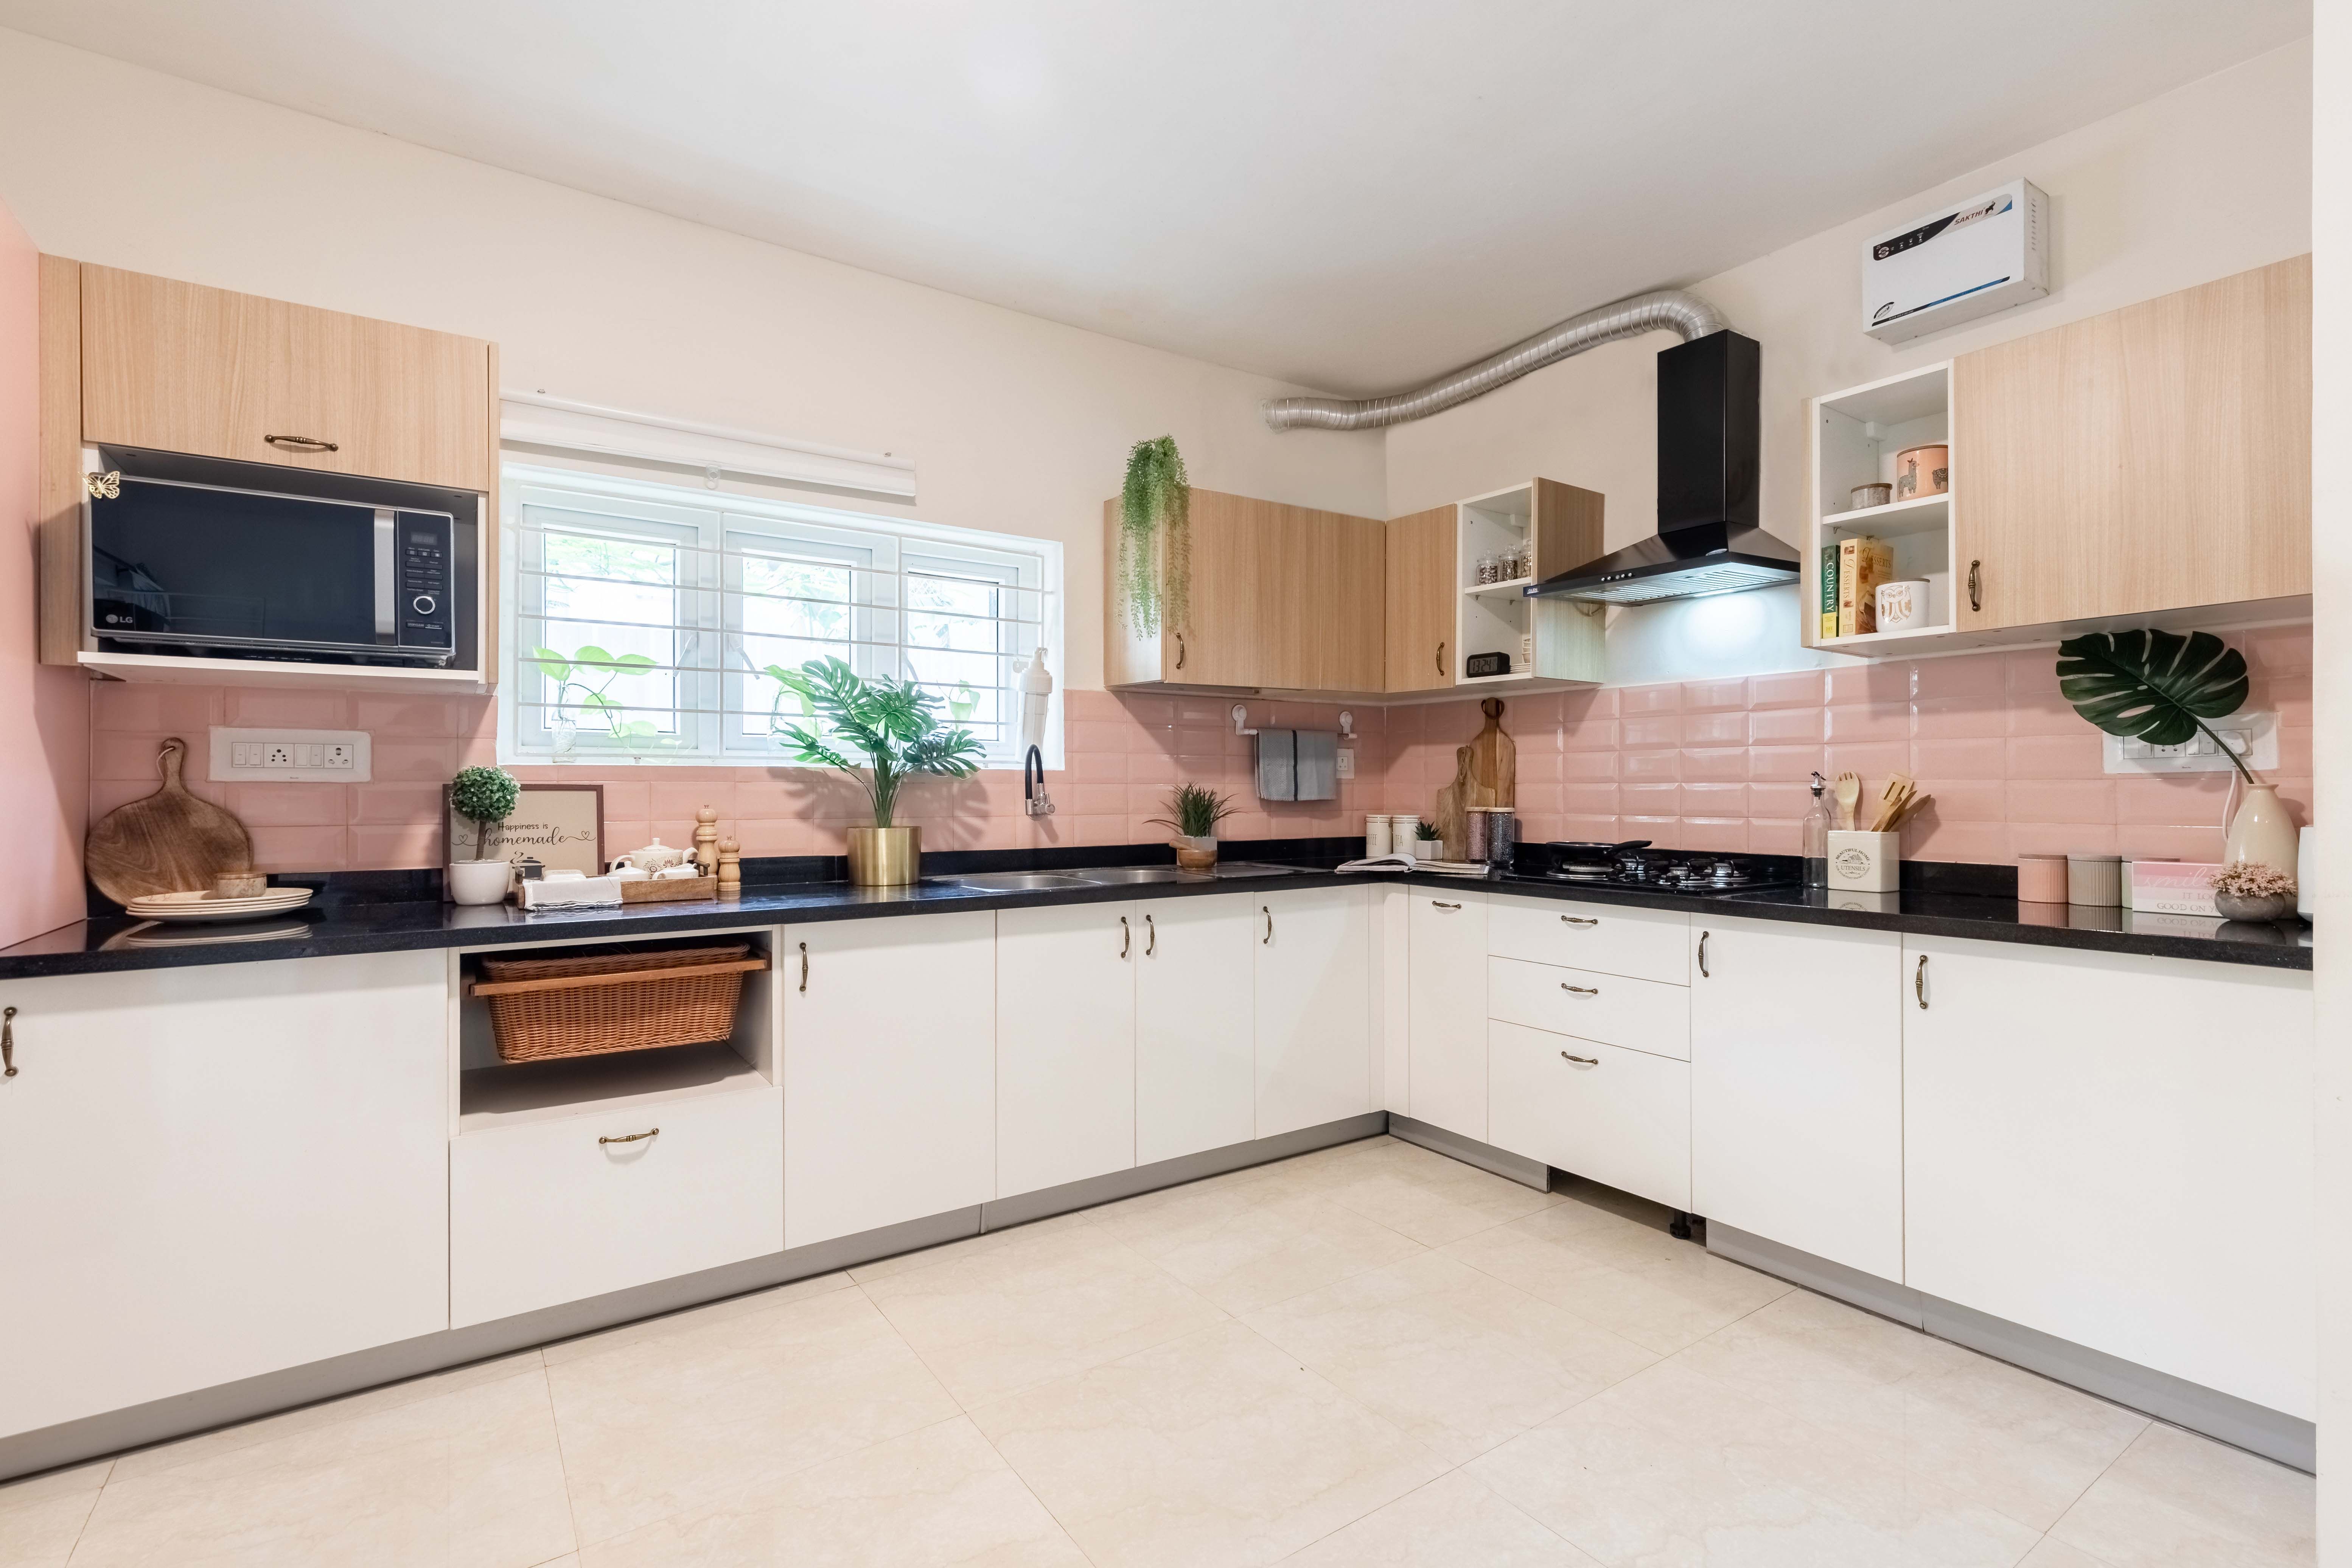 Modern L-Shaped Kitchen Design With Pink Backsplash Tiles